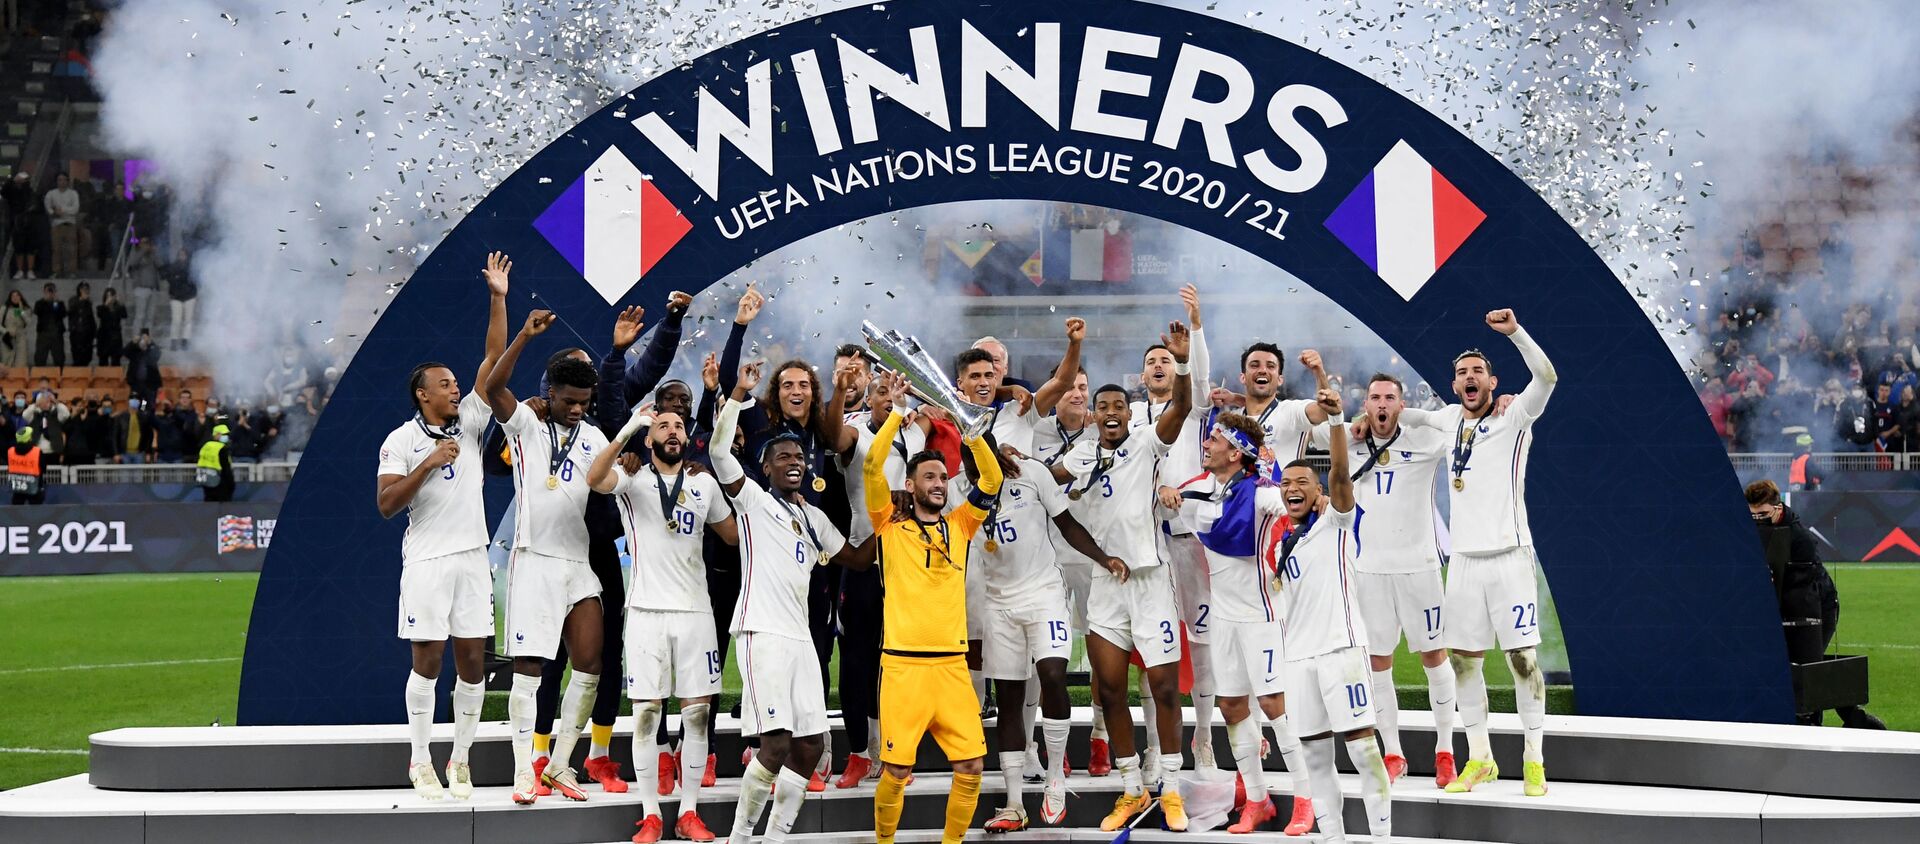 المنتخب الفرنسي يتوج ببطولة دوري الأمم الأوروبية للمرة الأولى في تاريخه بعد فوزه على نظيره الإسباني - سبوتنيك عربي, 1920, 10.10.2021